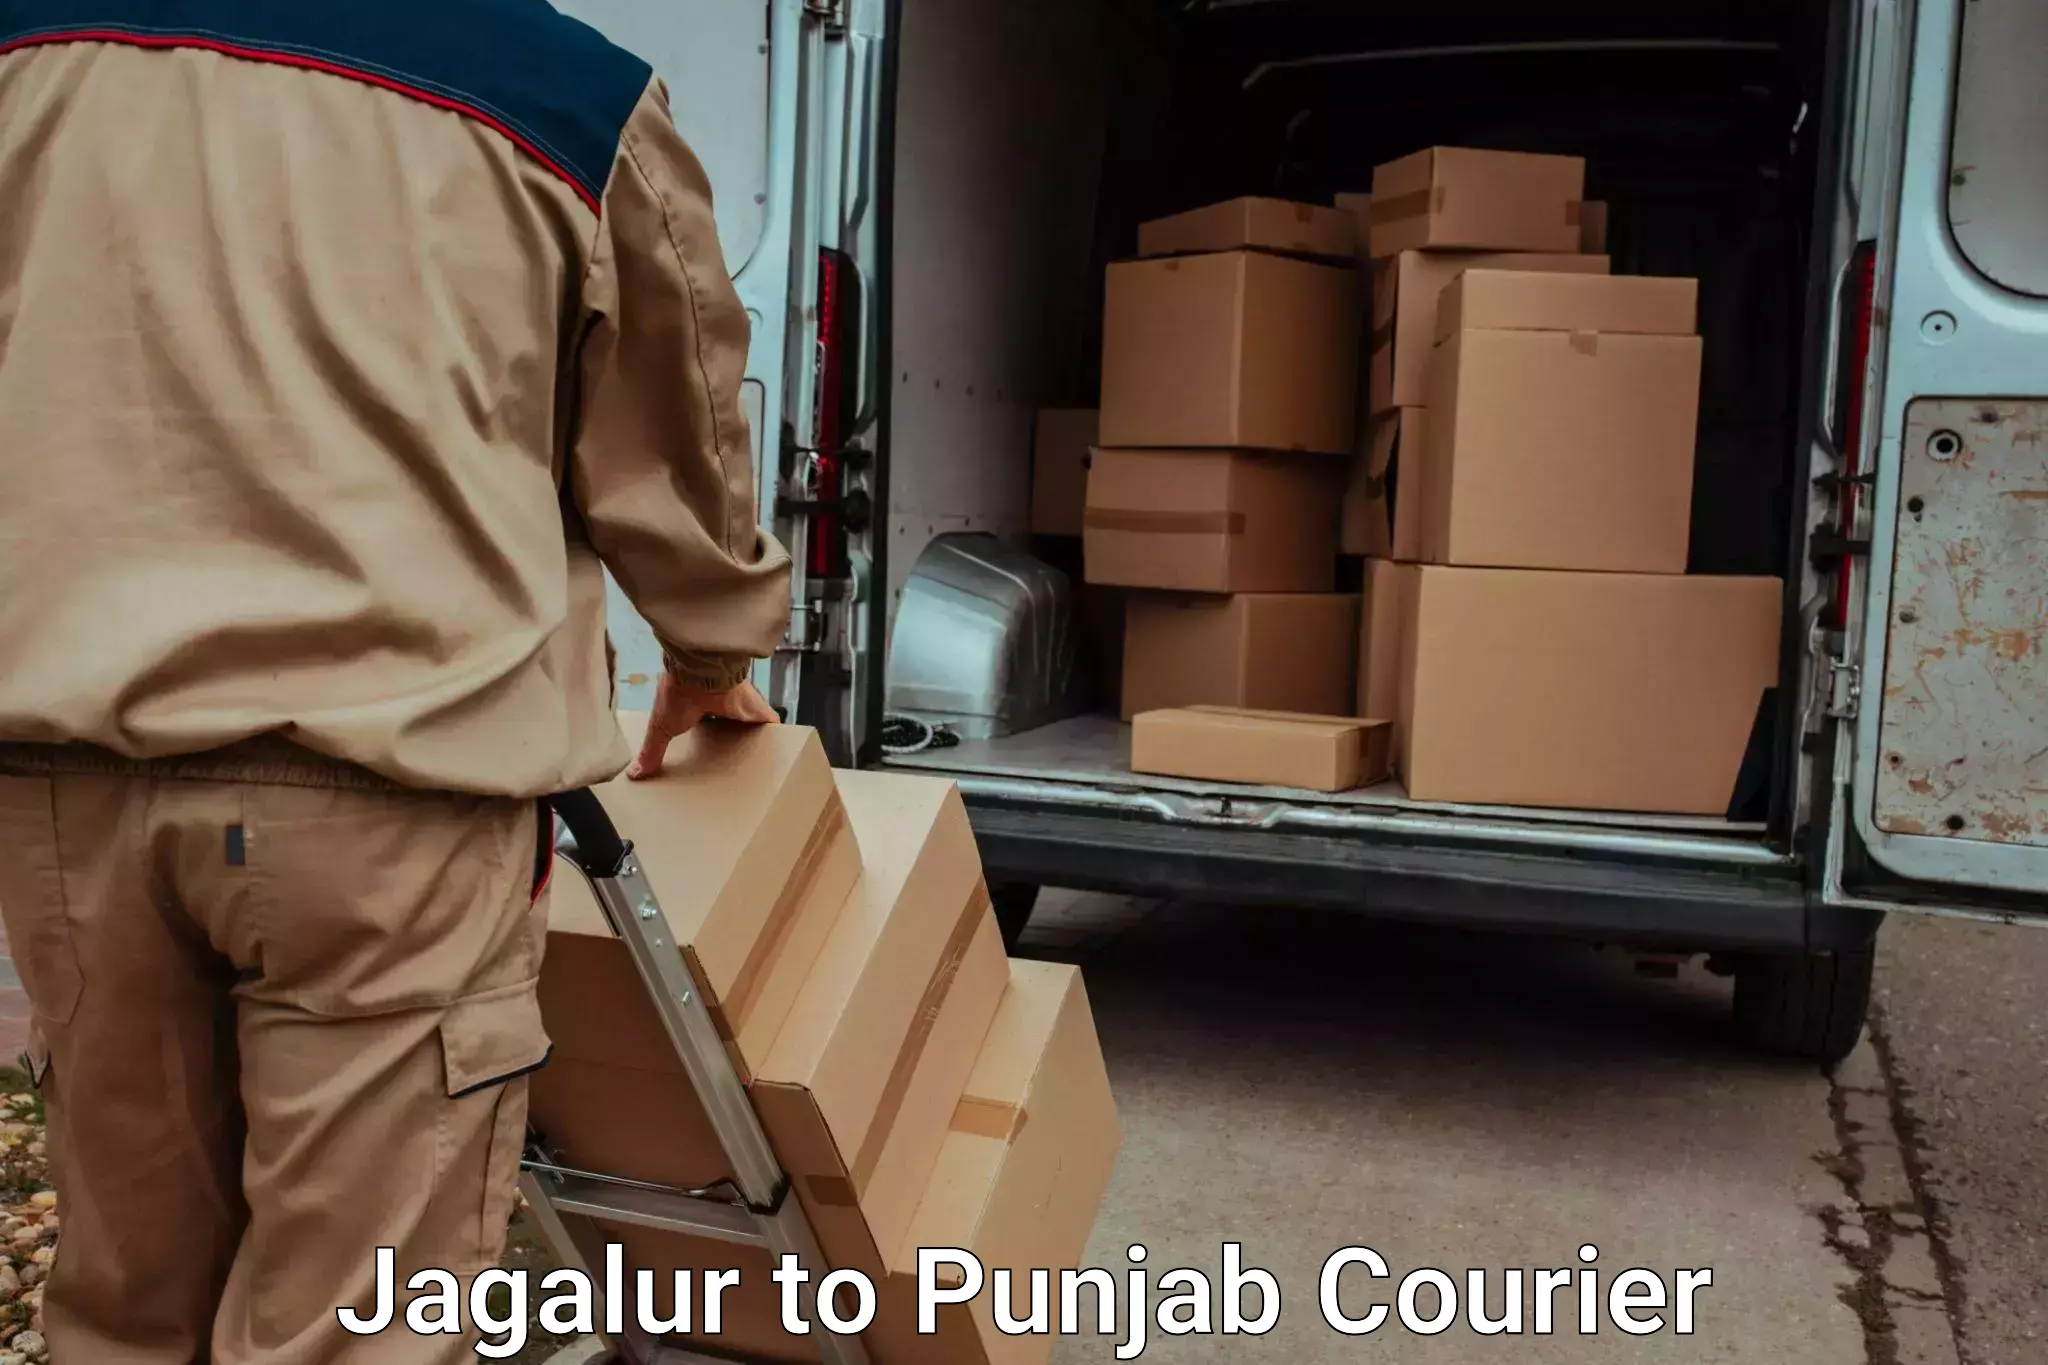 Global baggage shipping Jagalur to Jalandhar